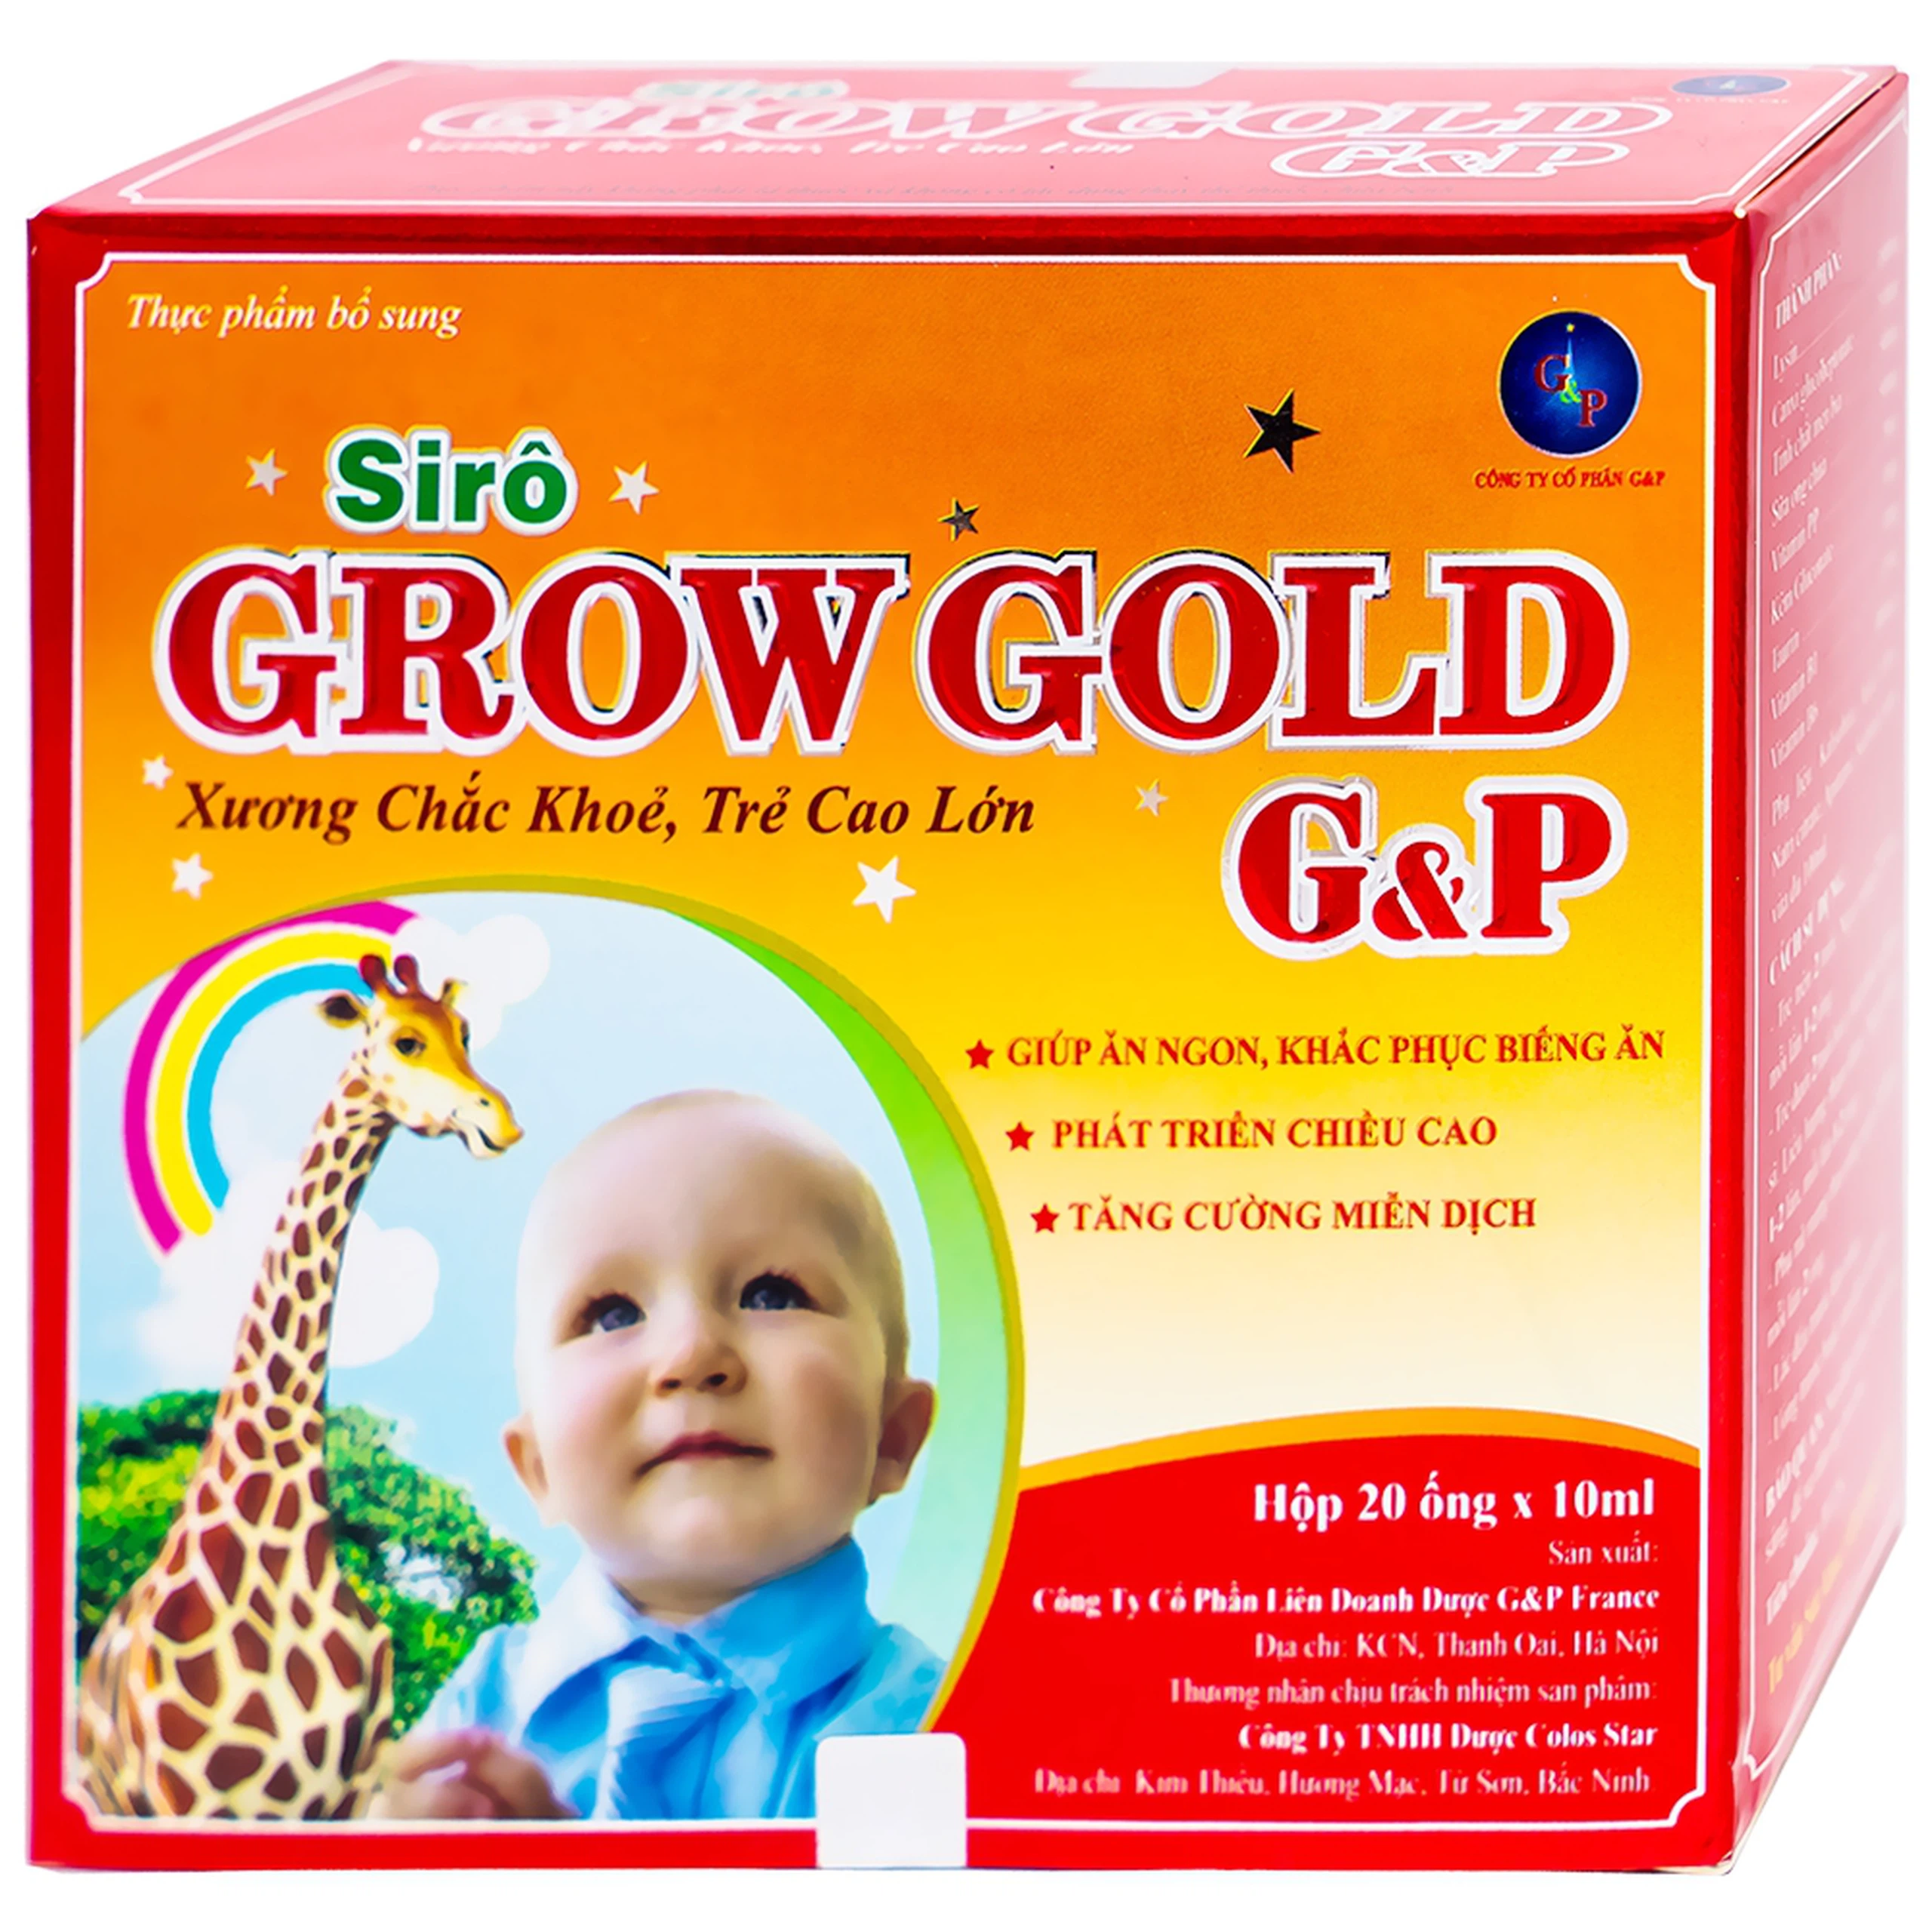 Siro Grow Gold G&P giúp ăn ngon, khắc phục biếng ăn, phát triển chiều cao (20 ống x 10ml)